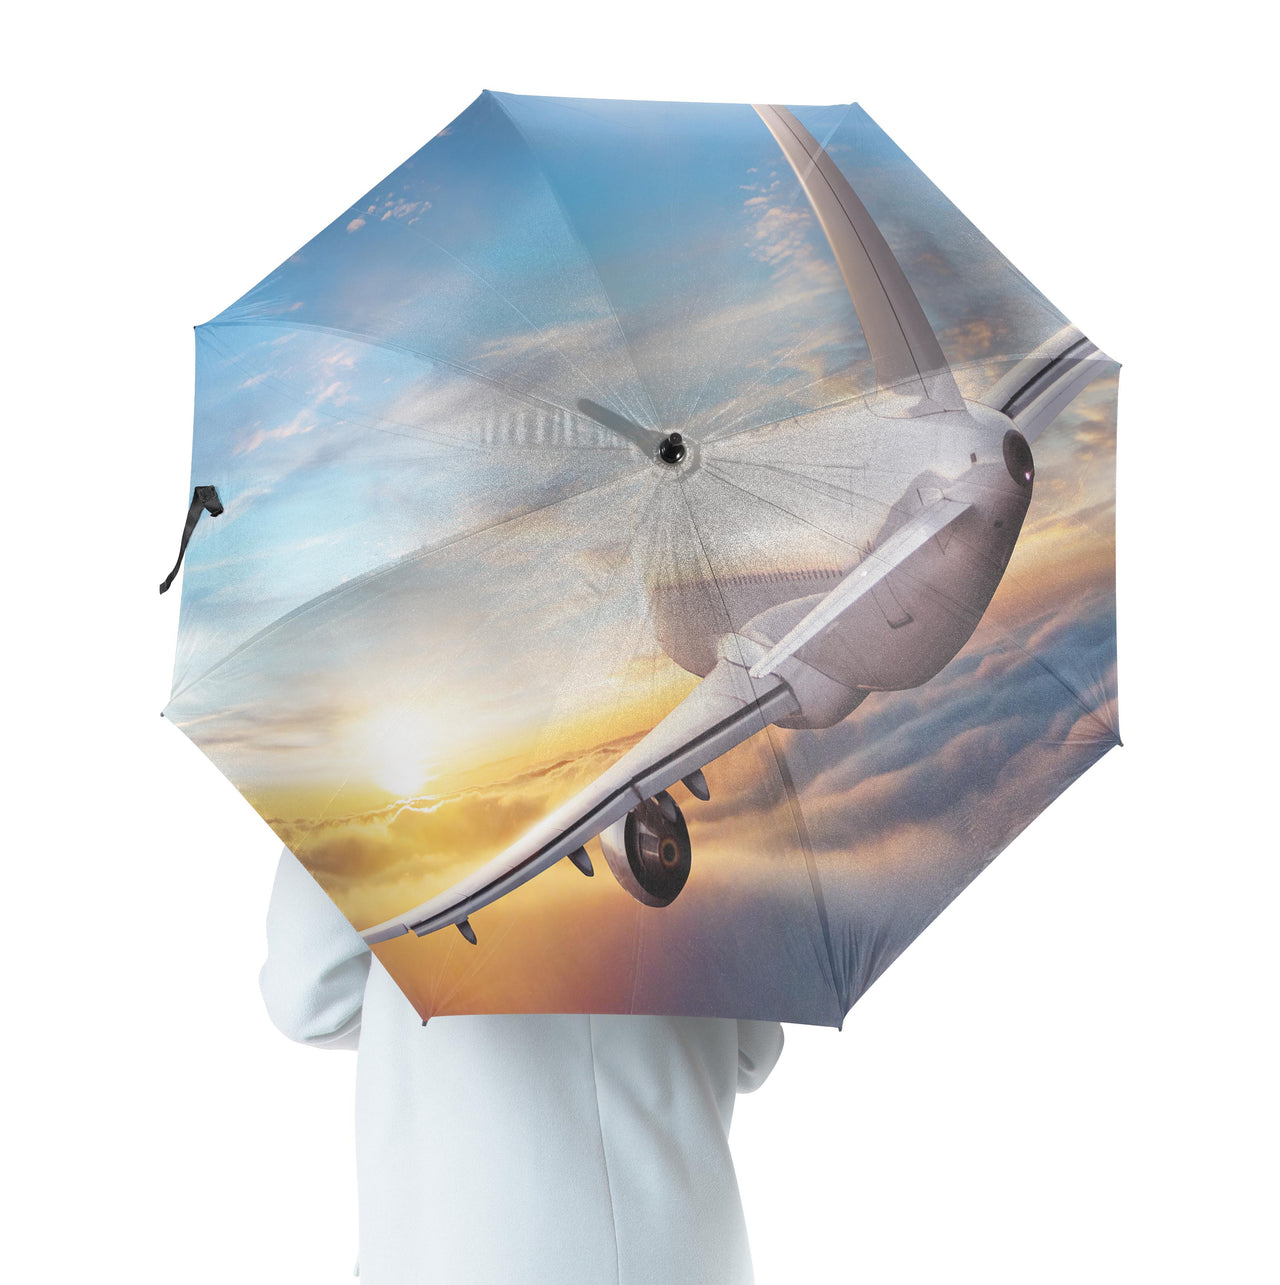 Airliner Jet Cruising over Clouds Designed Umbrella